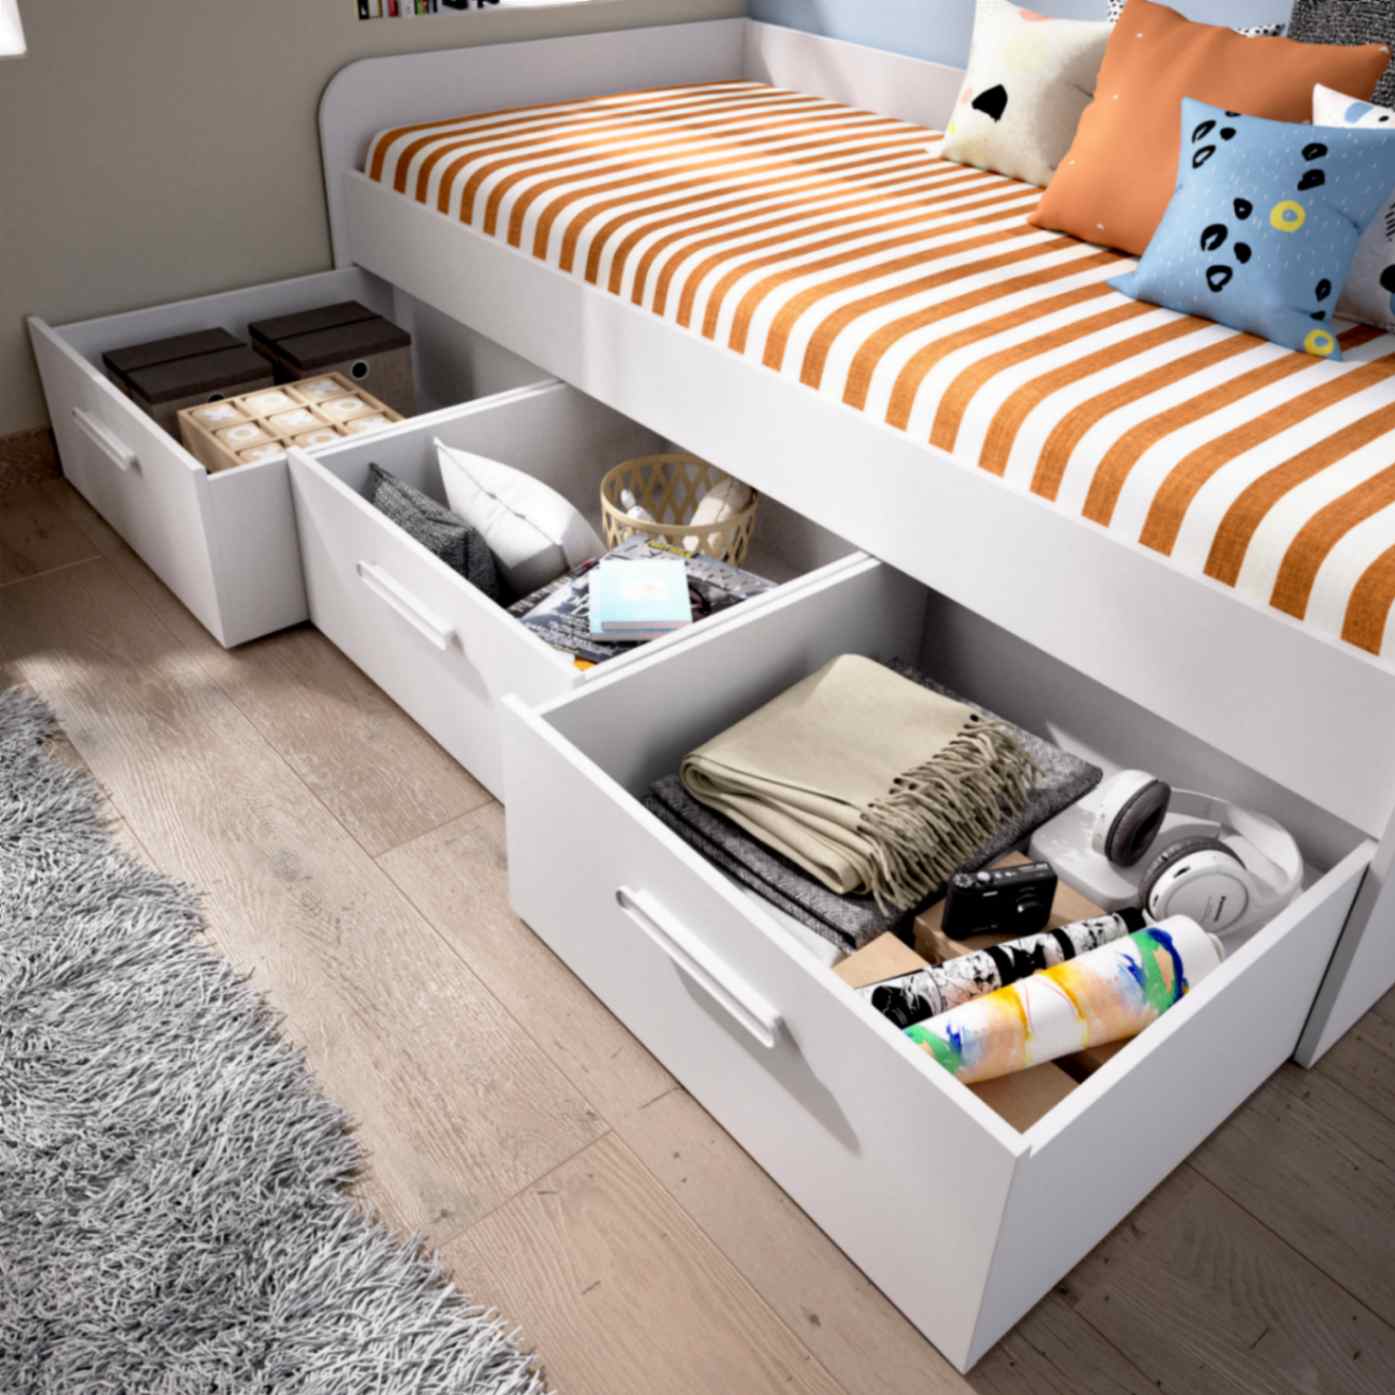 Cama nido con compartimentos - 90 x 190 cm - Blanco y gris + somier +  colchón - LOSIANA 